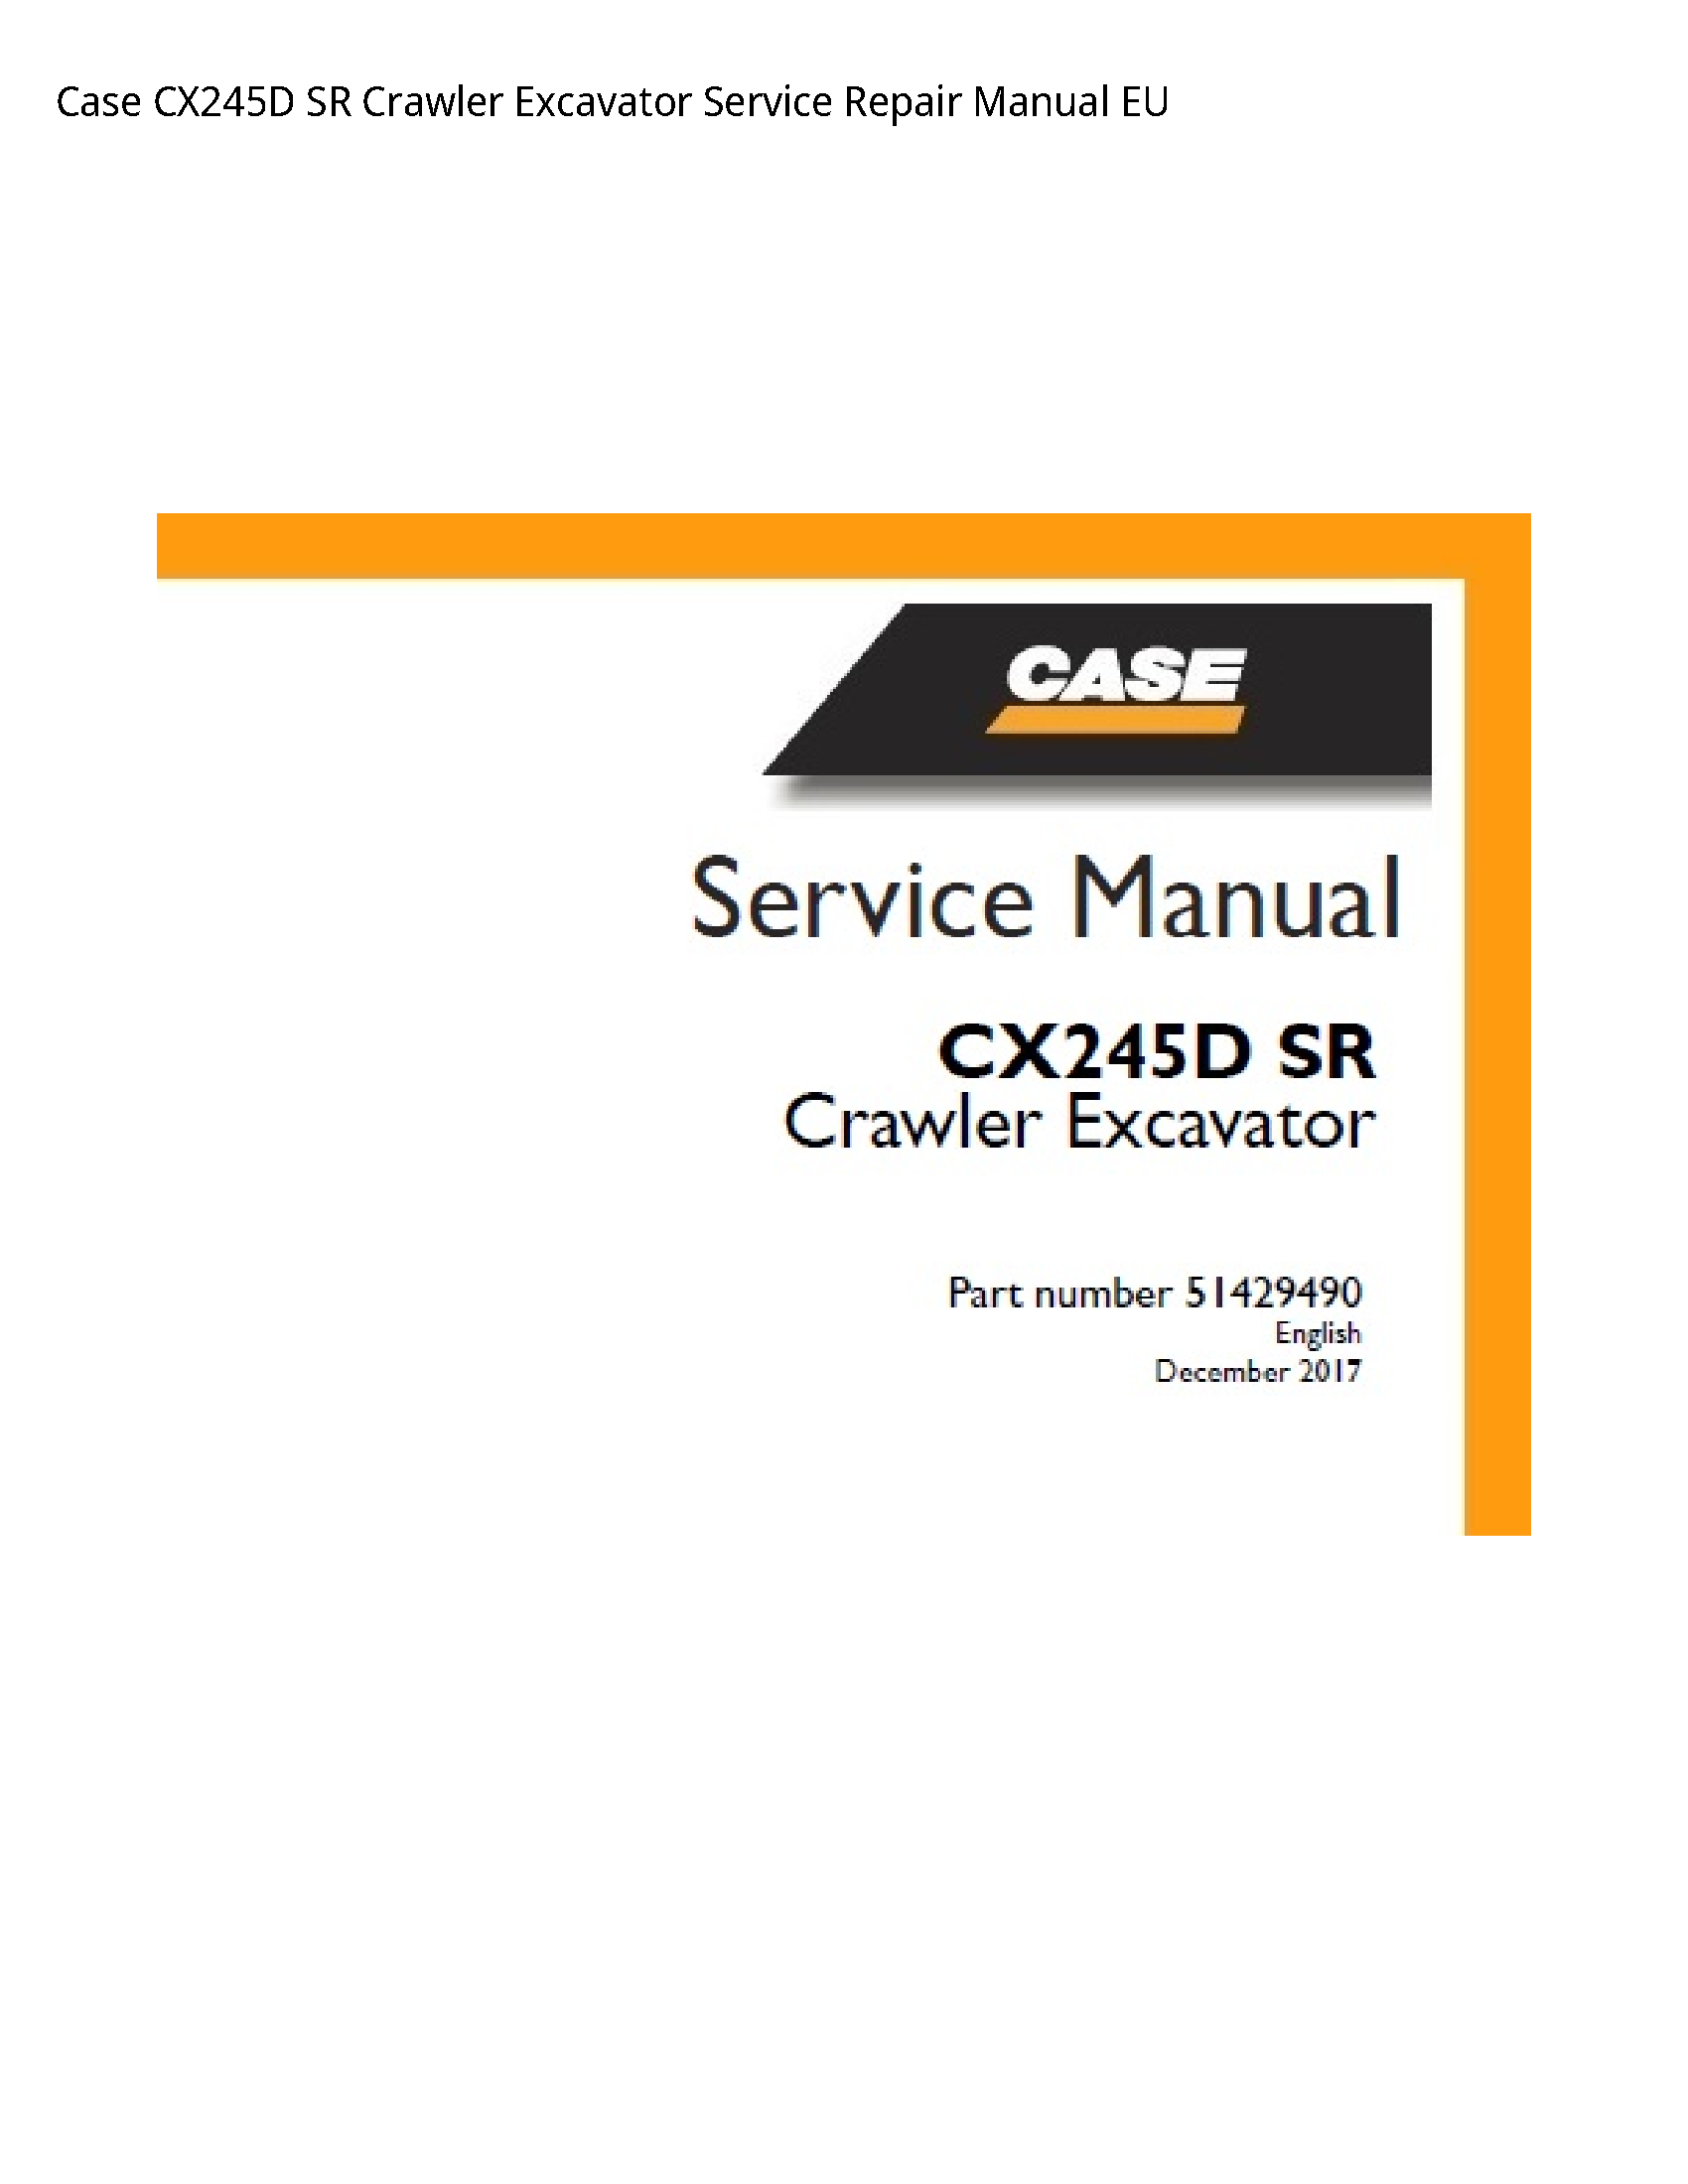 Case/Case IH CX245D SR Crawler Excavator manual